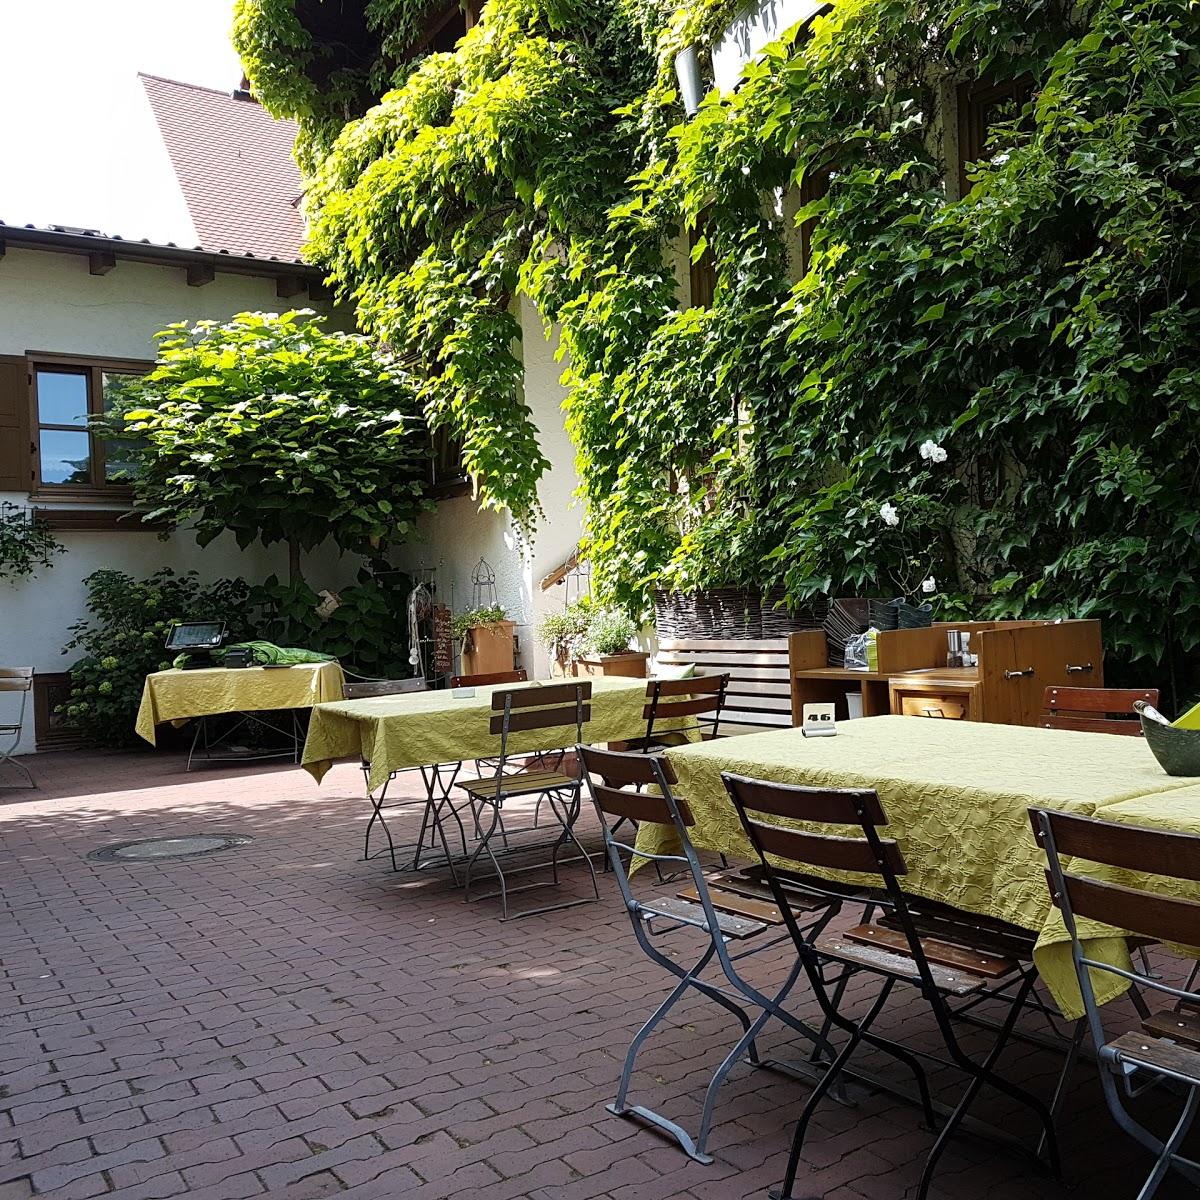 Restaurant "Voglbräu" in  Inchenhofen